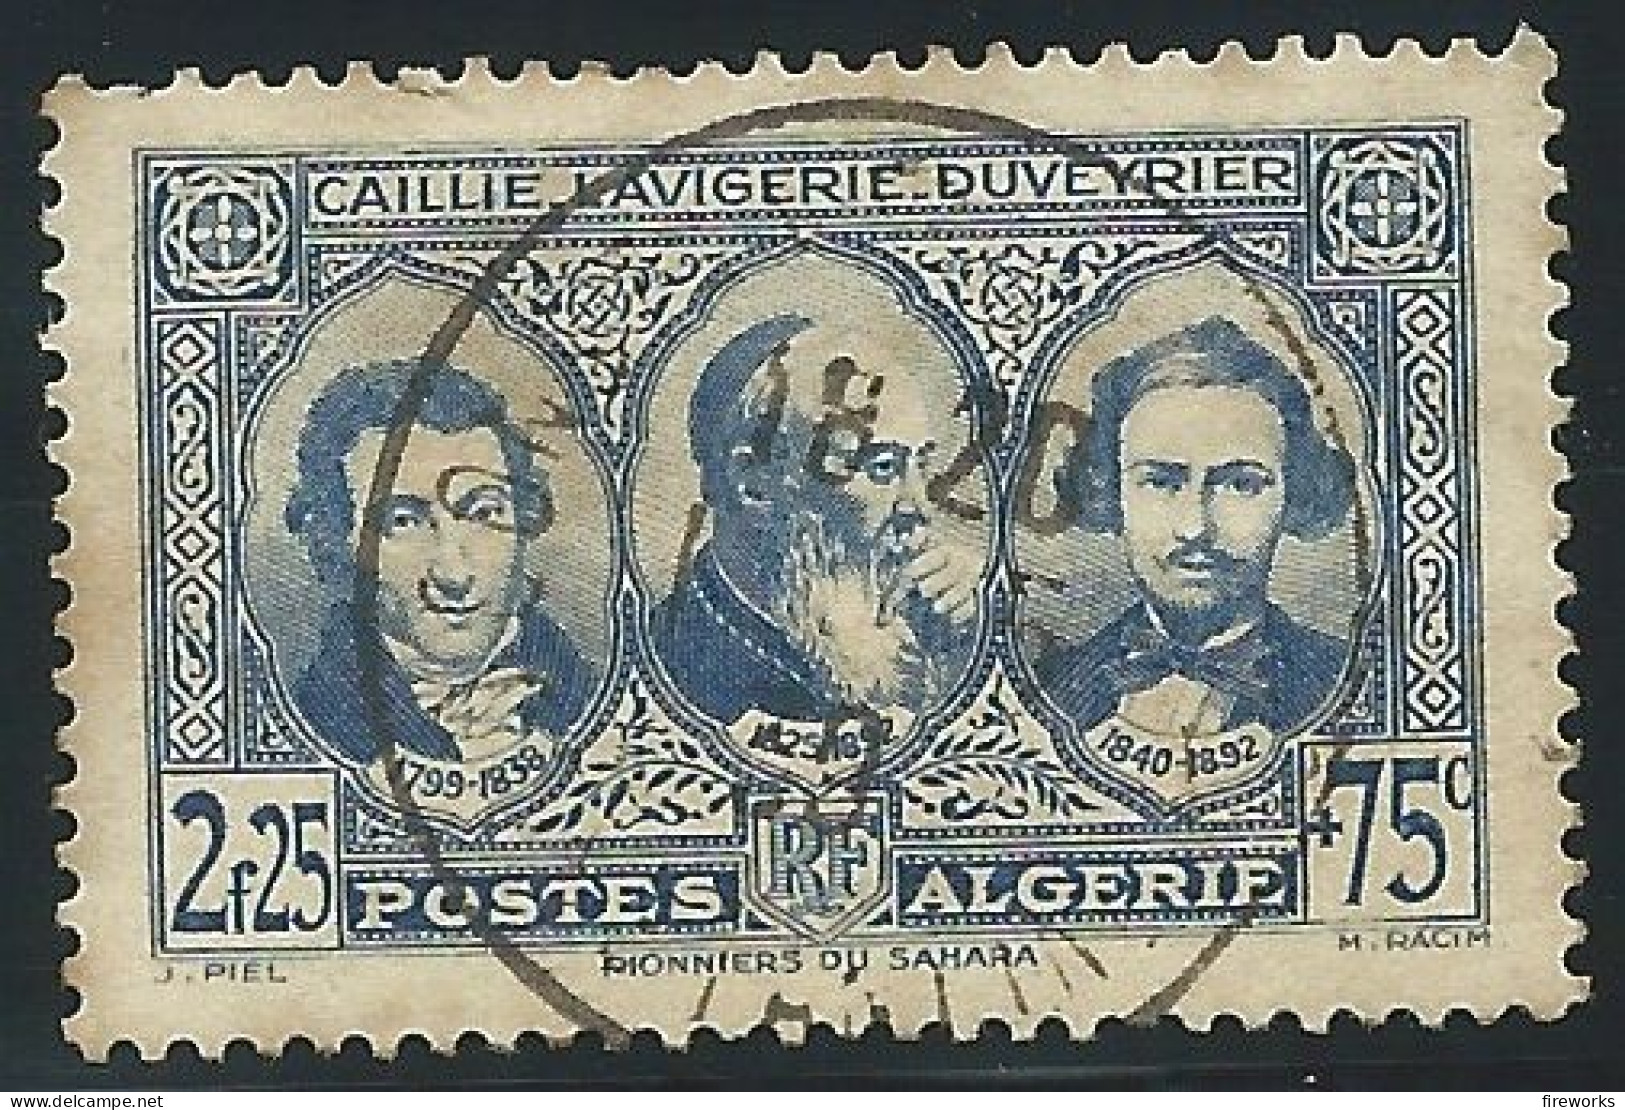 [1939] Timbre - Poste D'Algérie YT N° 151 - En L'Honneur Des Pionniers Du Sahara - Algérie (1962-...)